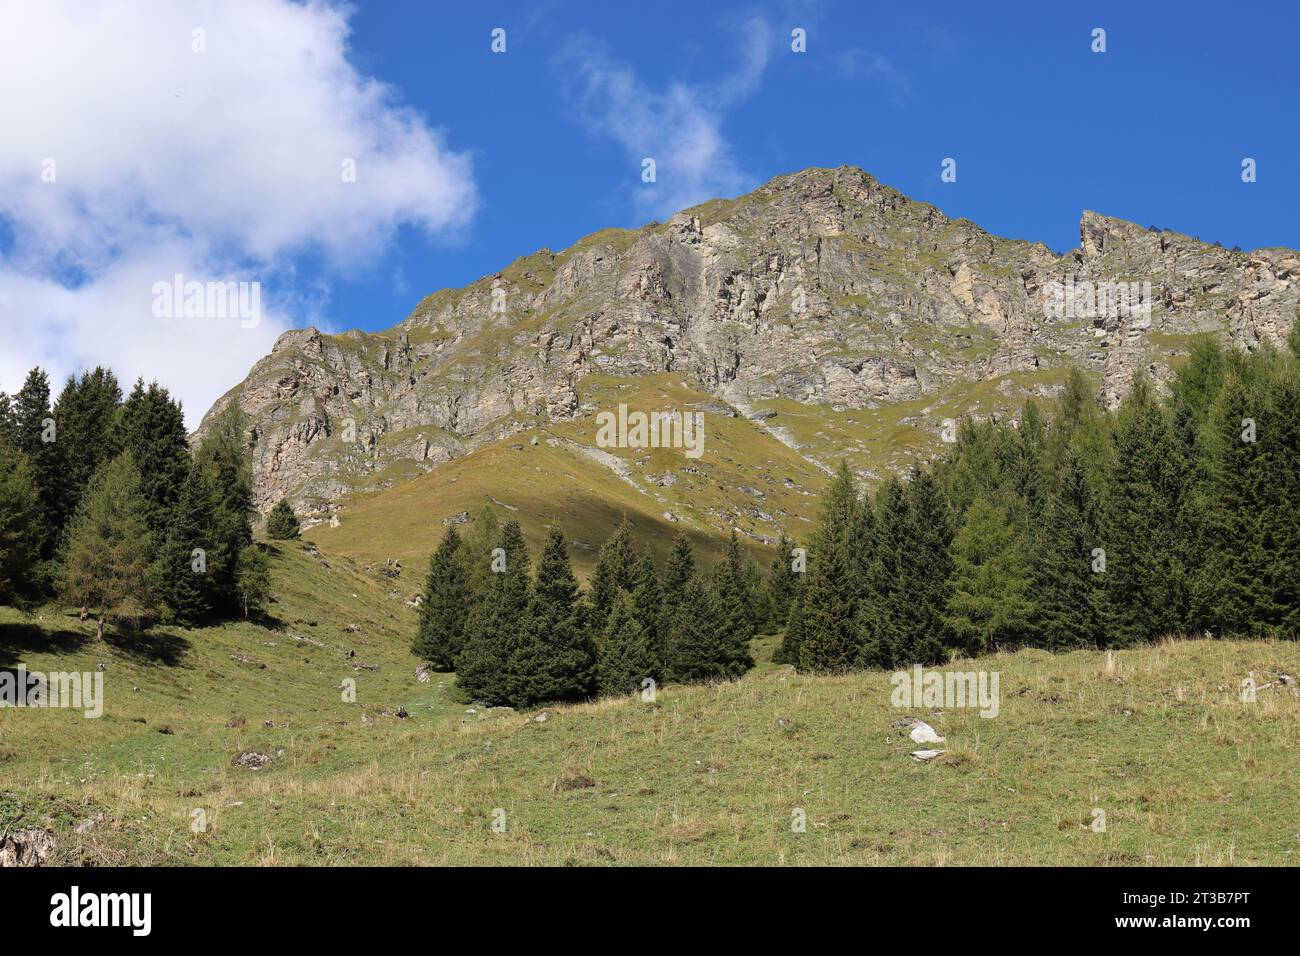 Vue de la ligne des arbres dans les montagnes et une paroi rocheuse envahie de vert délicat contre un ciel nuageux bleu Banque D'Images